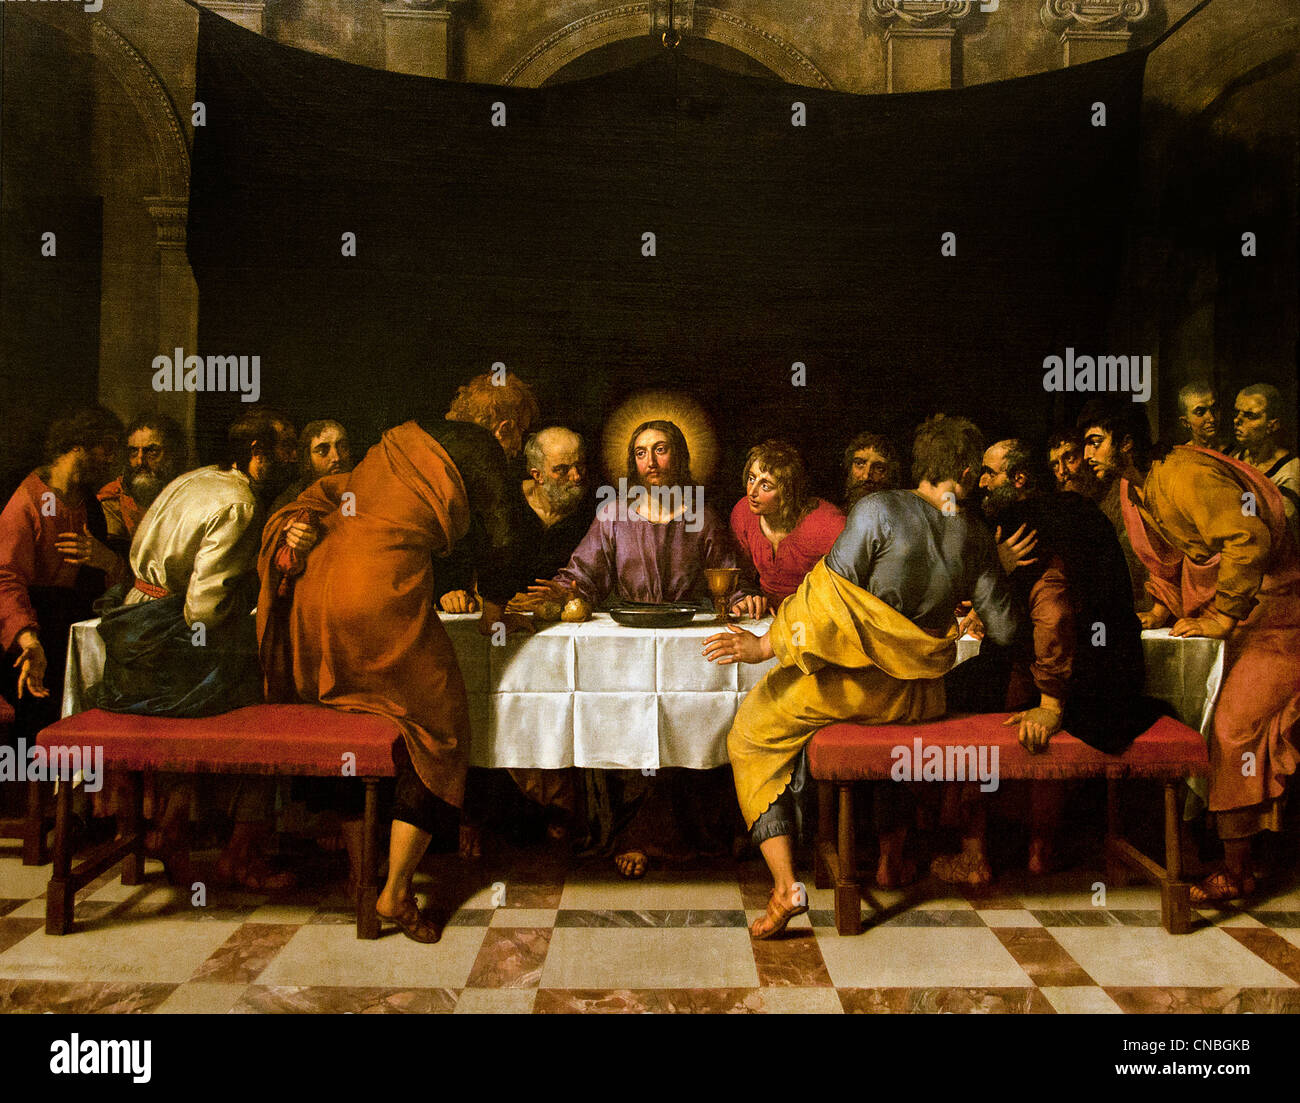 La ultima cena de jesus fotografías e imágenes de alta resolución - Alamy